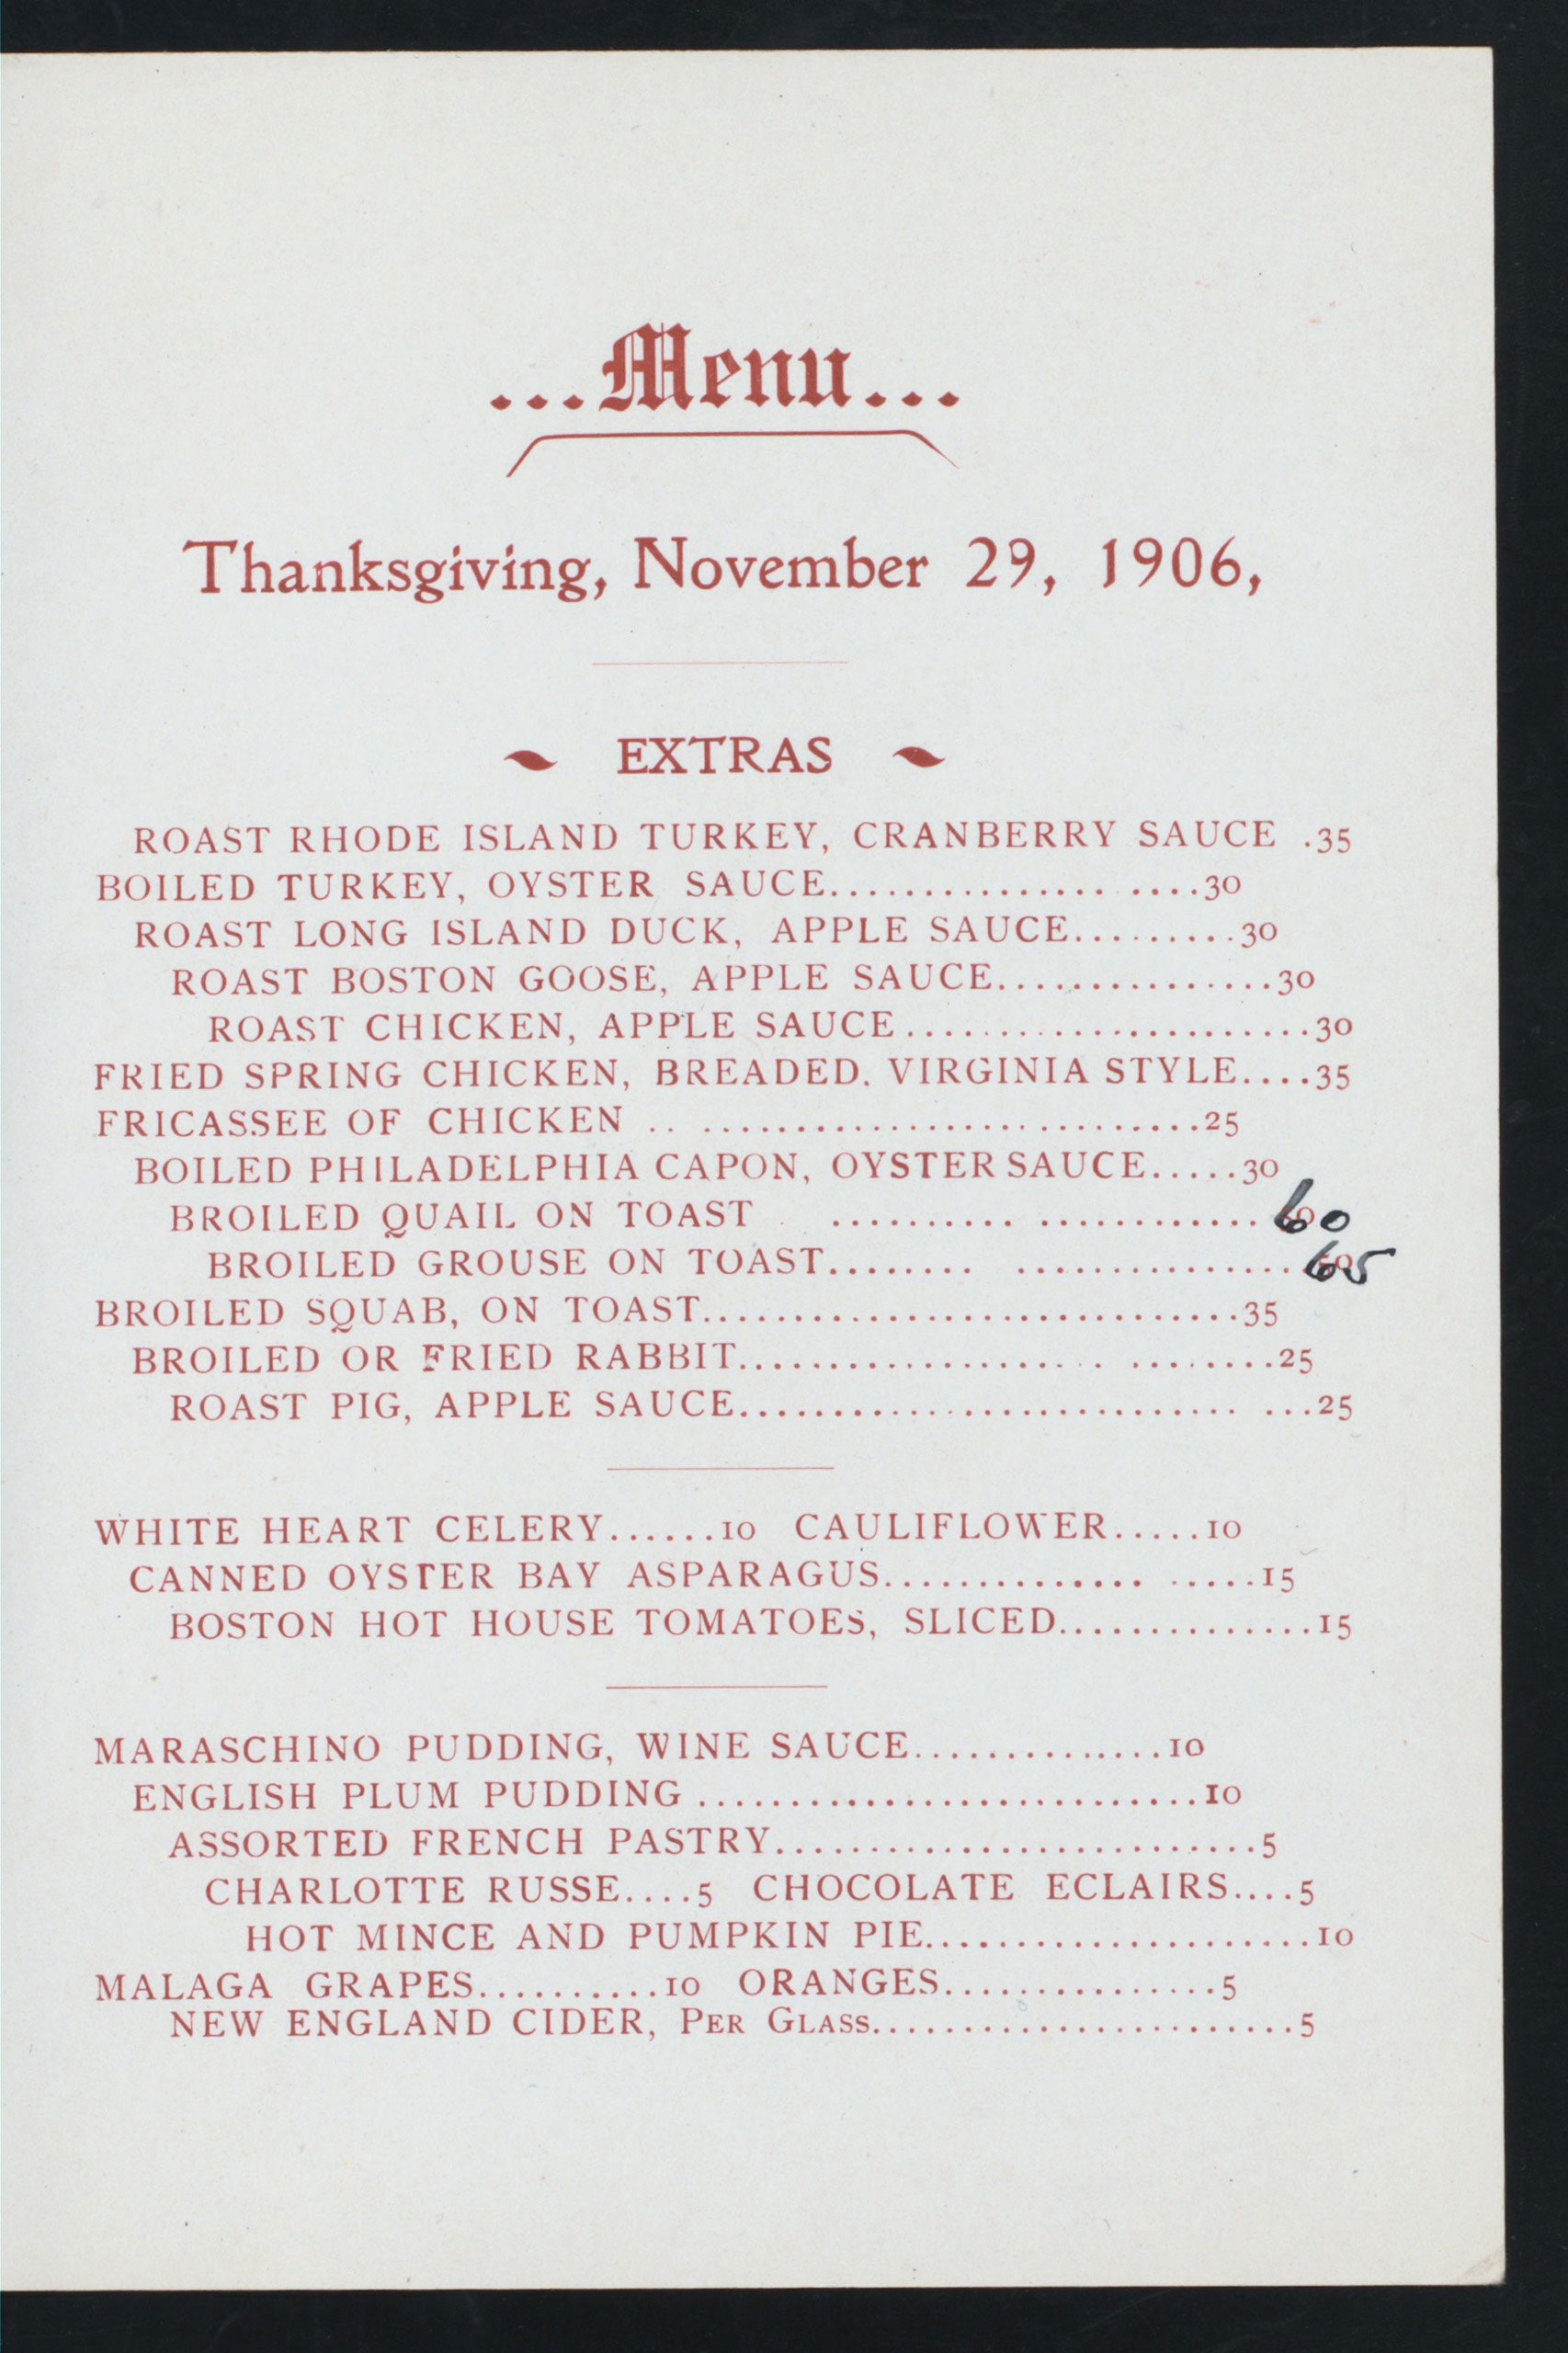 Thanksgiving Day menu at M.F. Lyons Dining Rooms at 261 Bowery, NY, 1906.